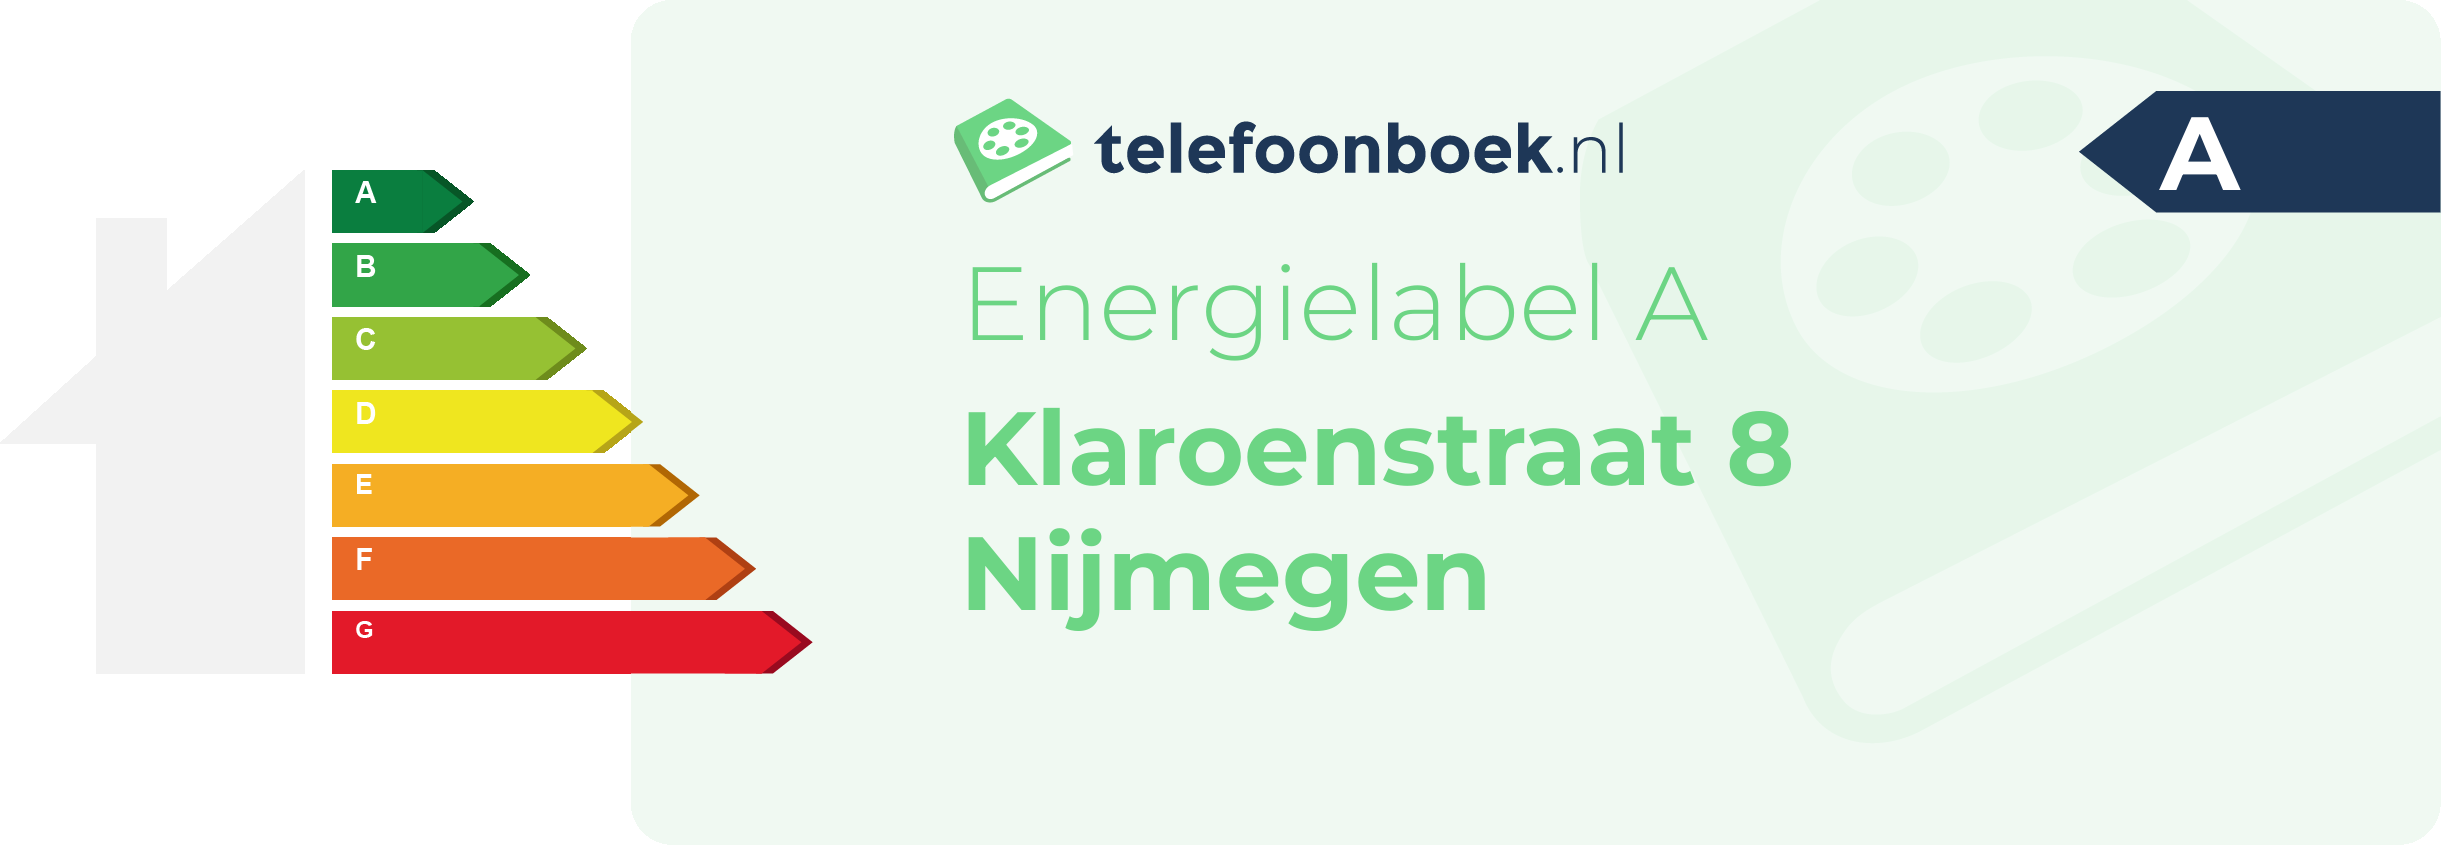 Energielabel Klaroenstraat 8 Nijmegen